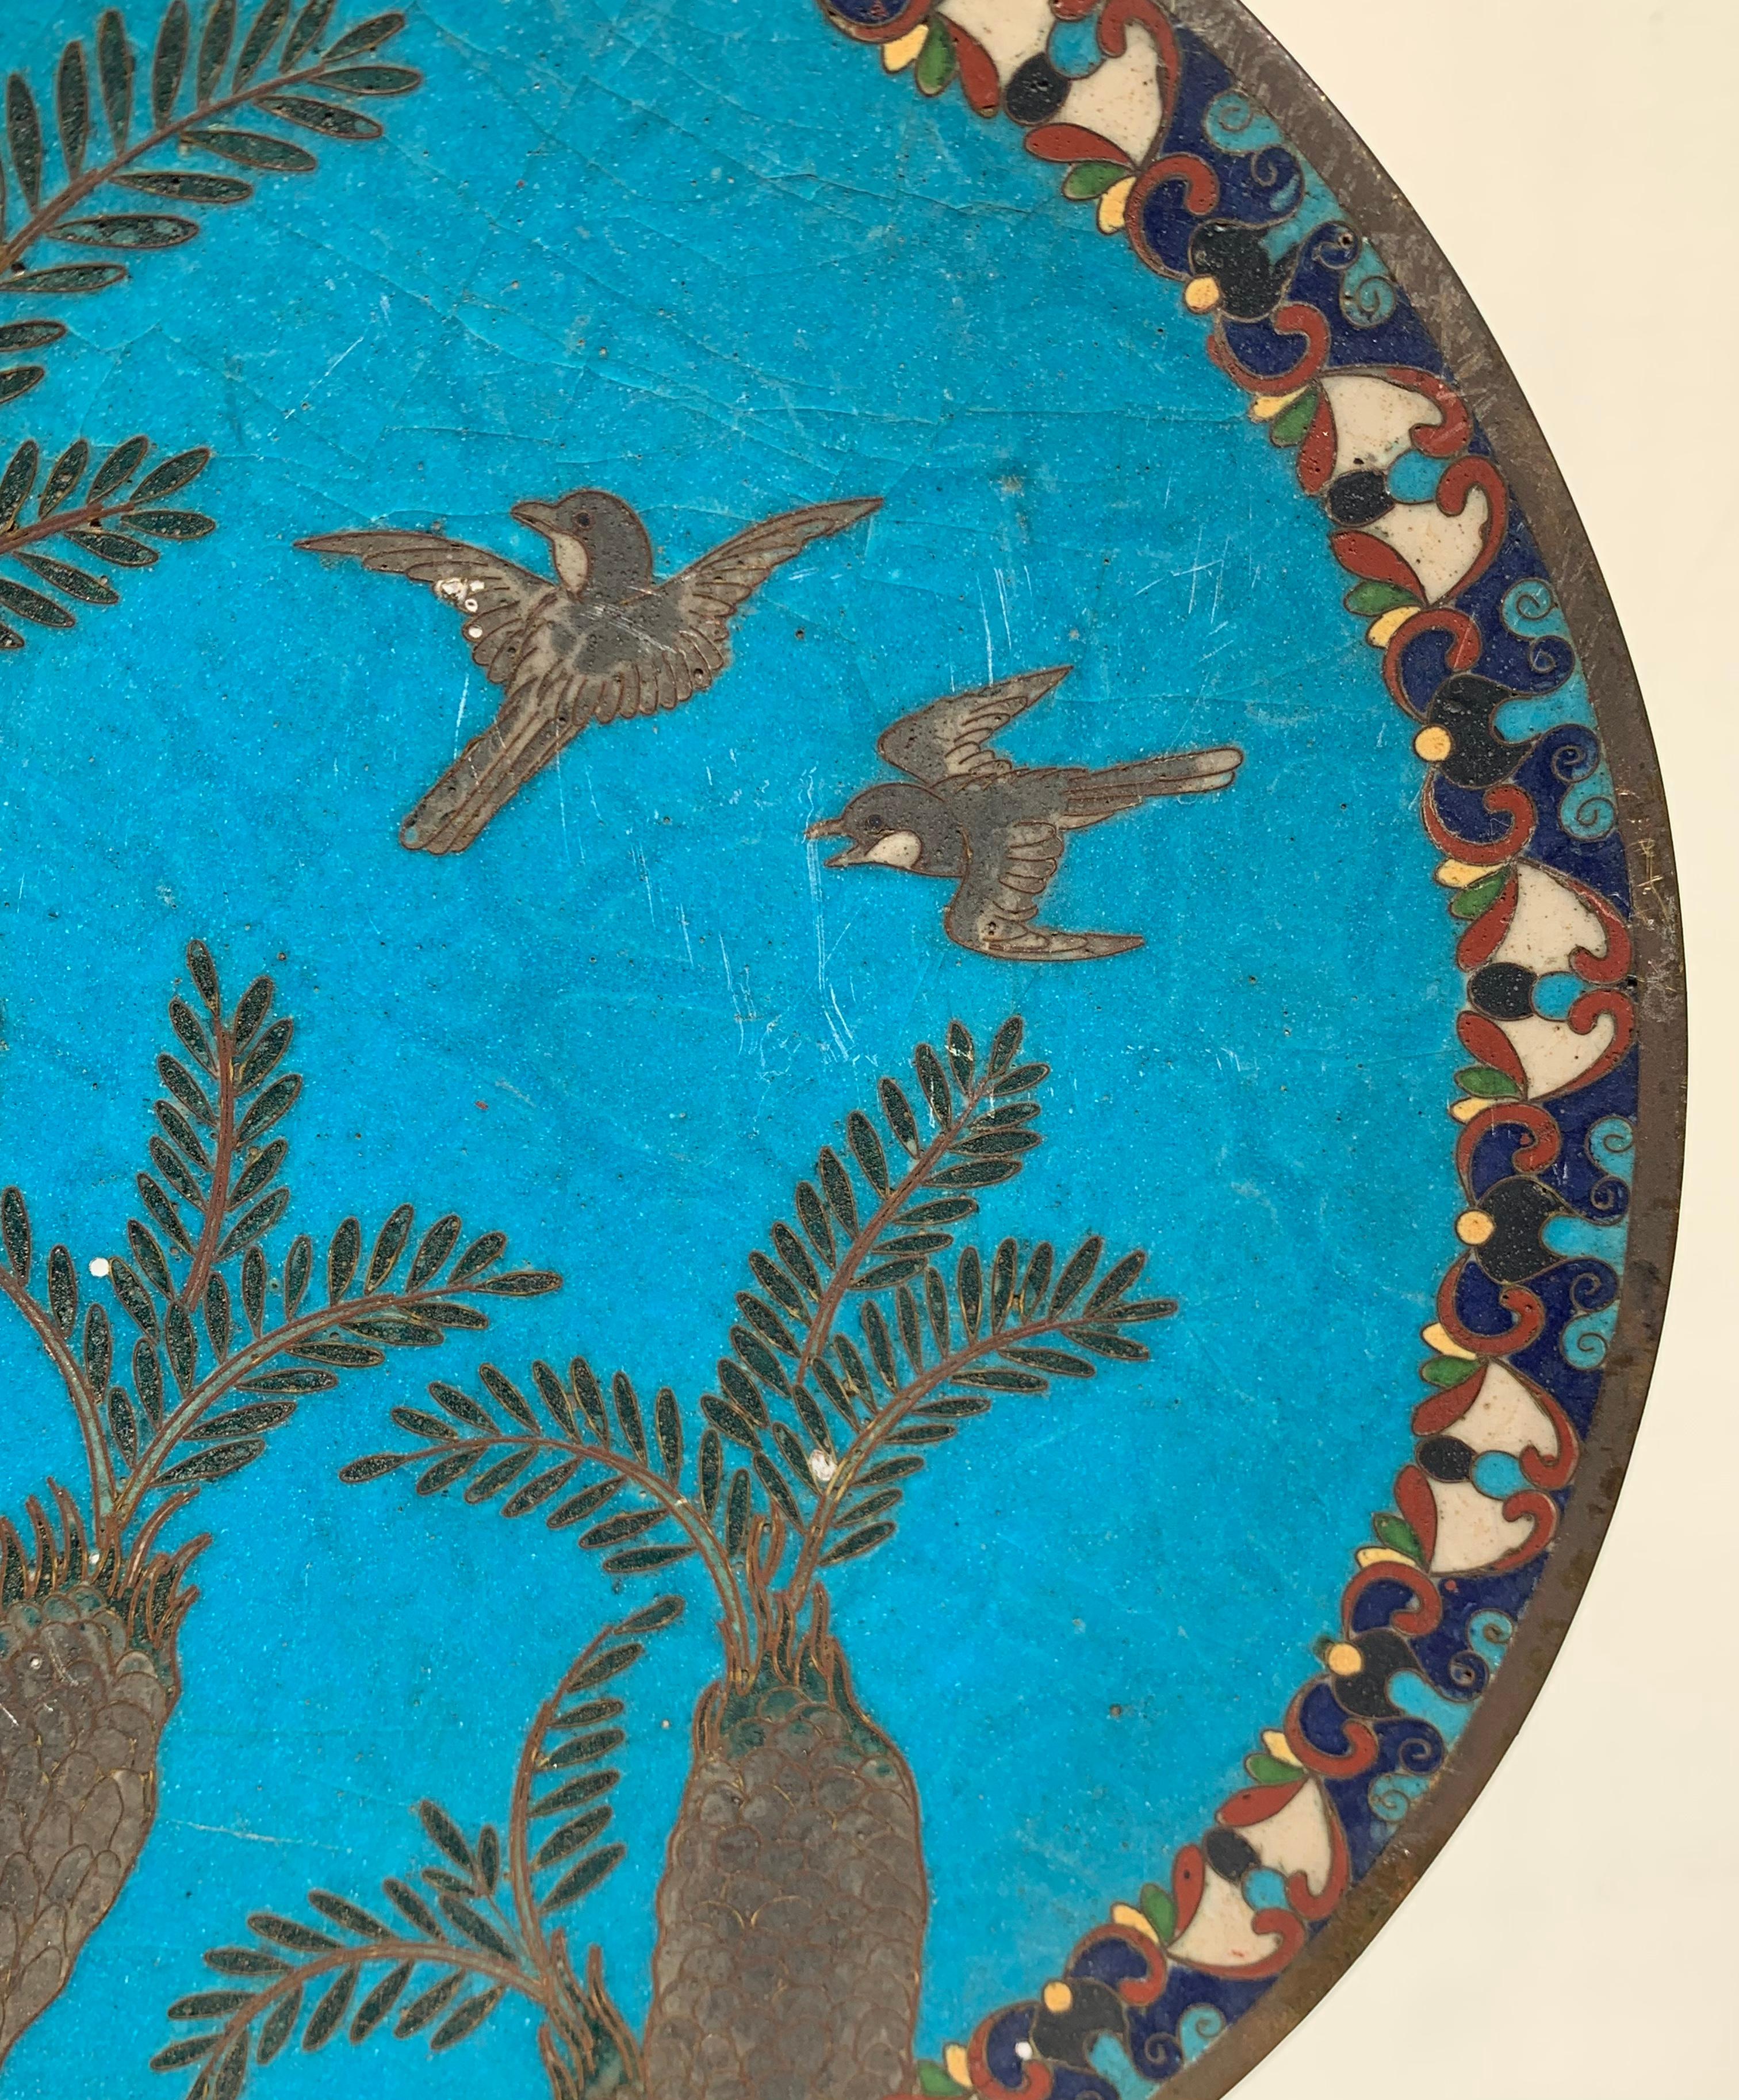 Antique Arabian Hand-Painted Metal Cloisonné Plate 2